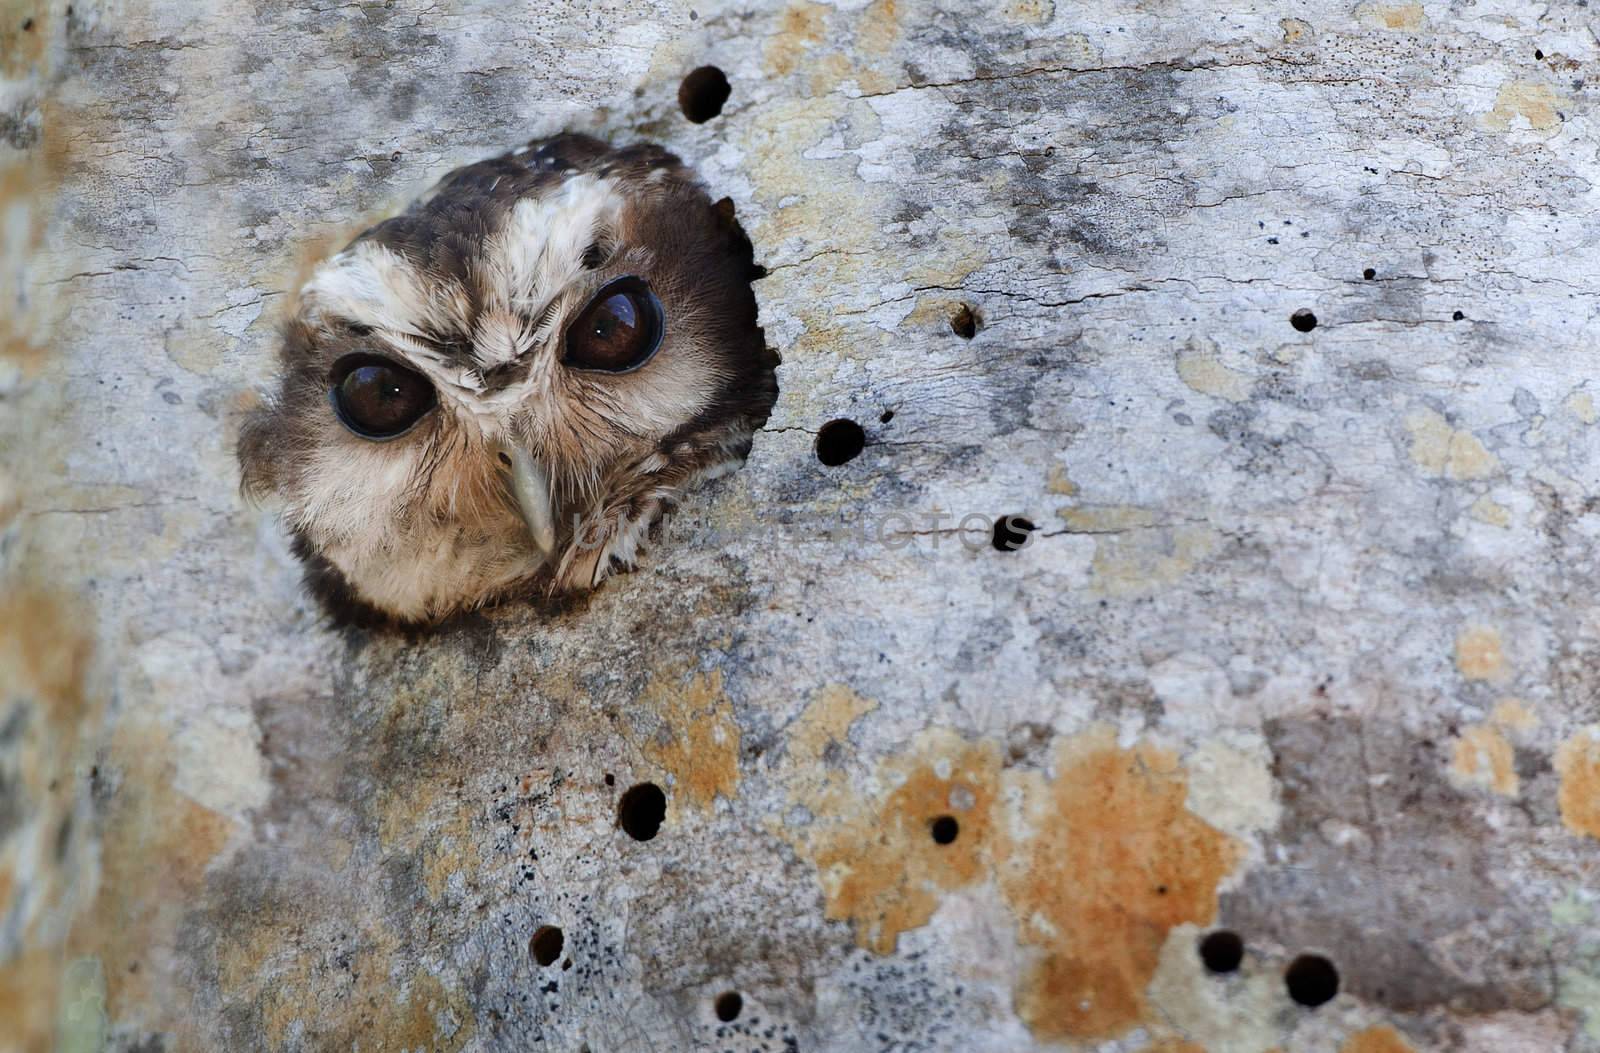 Cuban Screech-owl  in Tree Hole by SURZ